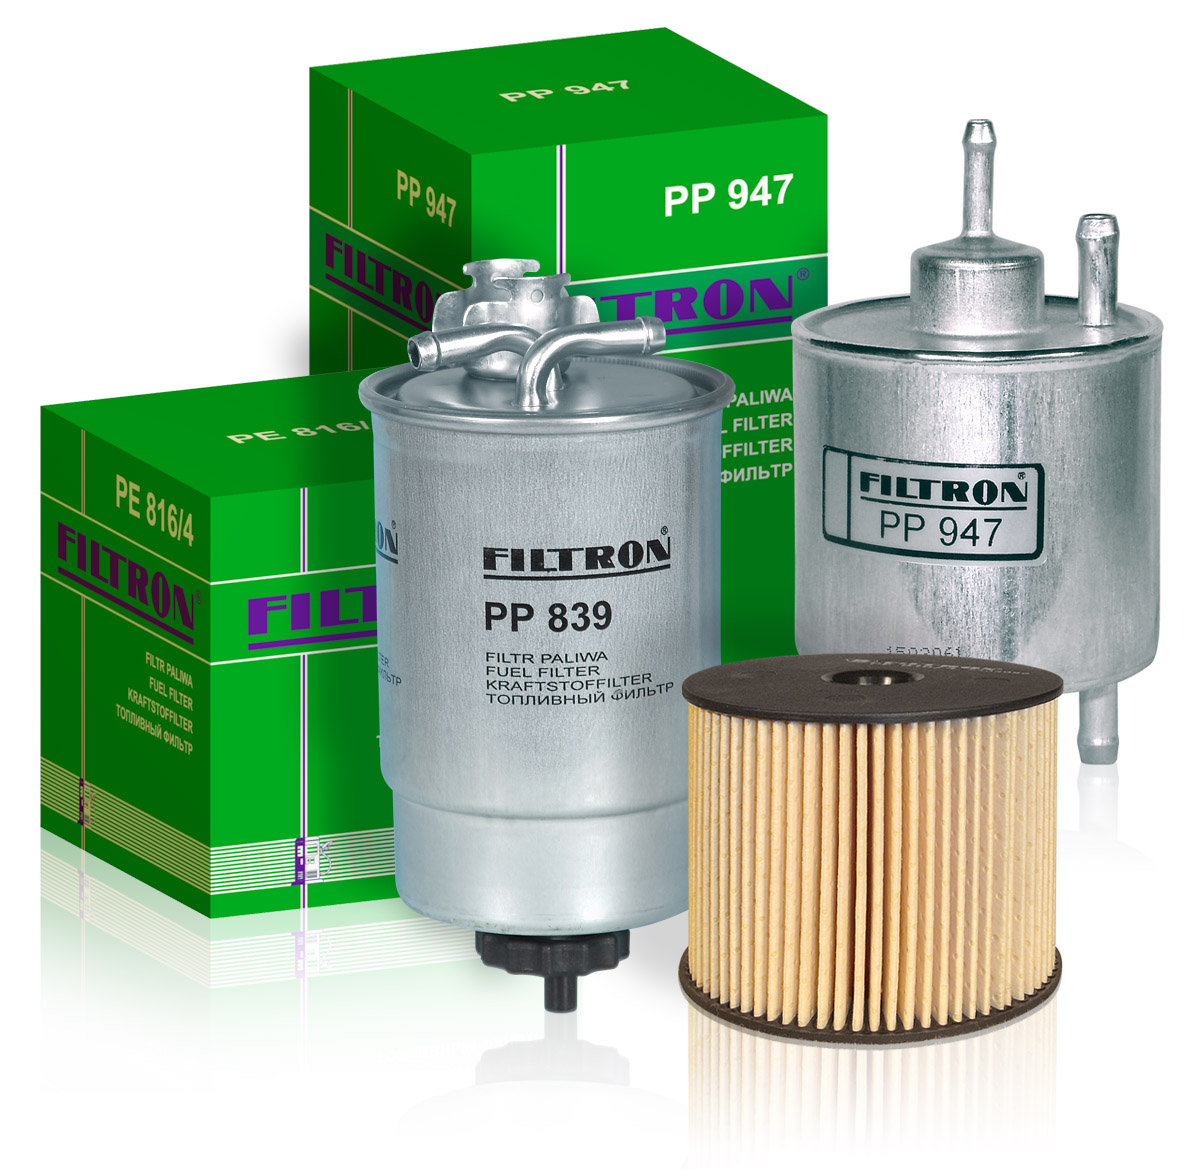 Фильтра для очистки дизеля. FILTRON pp969 фильтр топливный. FILTRON pp857. Pp853 FILTRON. PP 857/1 фильтр топливный.